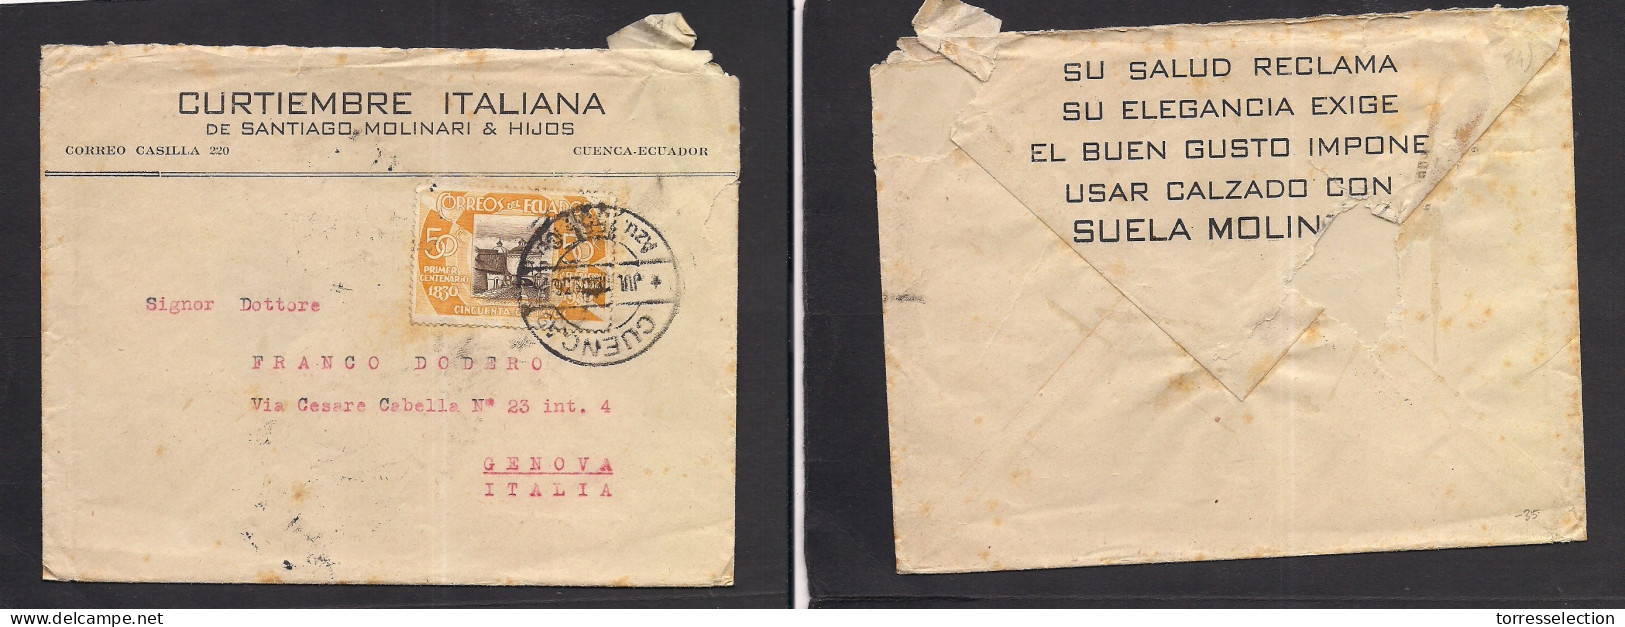 ECUADOR. 1936 (July) Cuenca, Azu, SS - Italy, Genova. Fkd Env 50c Bicolor Tied Cds + Contains. Better Usage. XSALE. - Ecuador